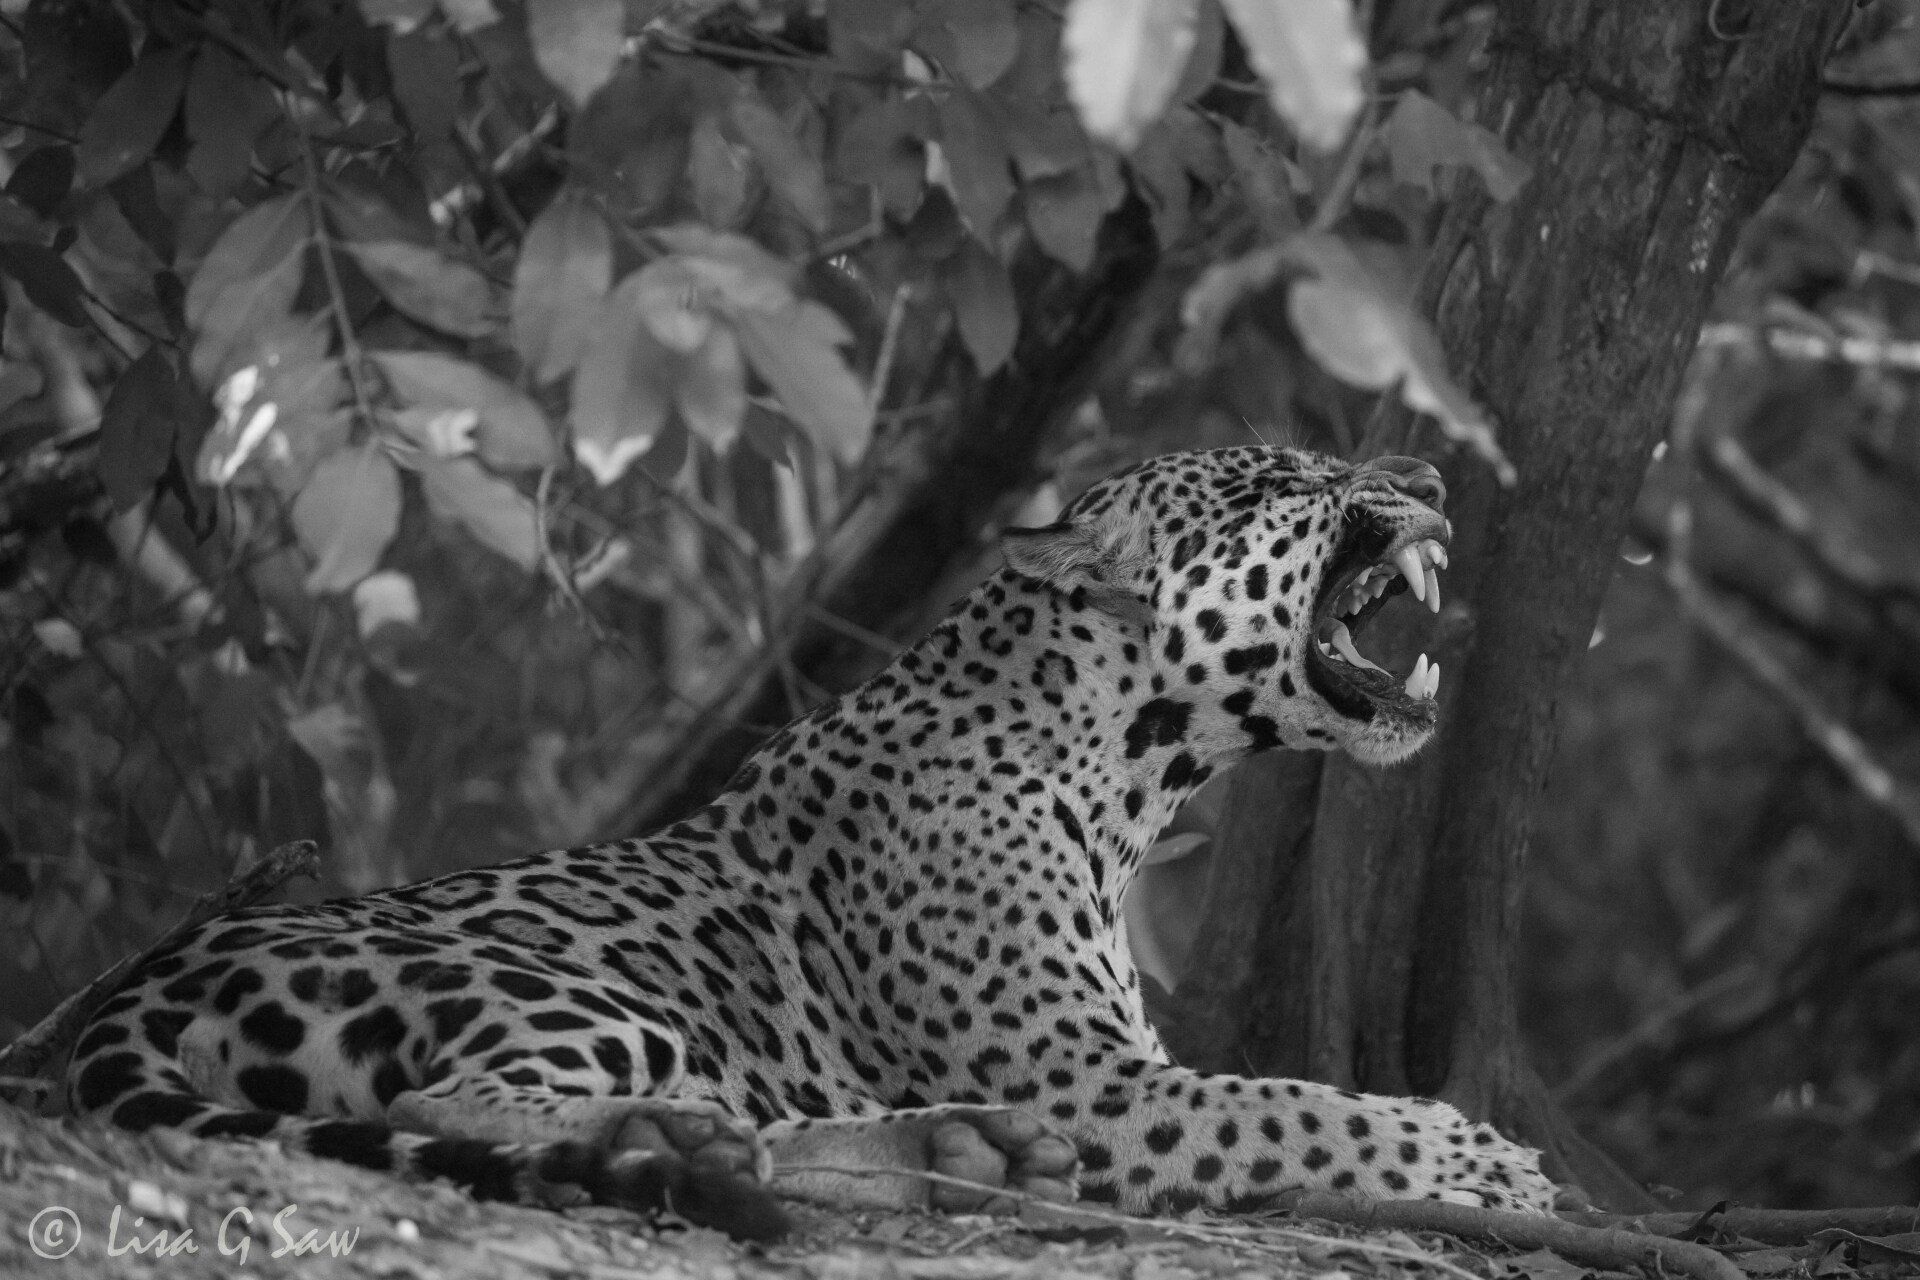 Jaguar yawning, baring teeth (black and white)